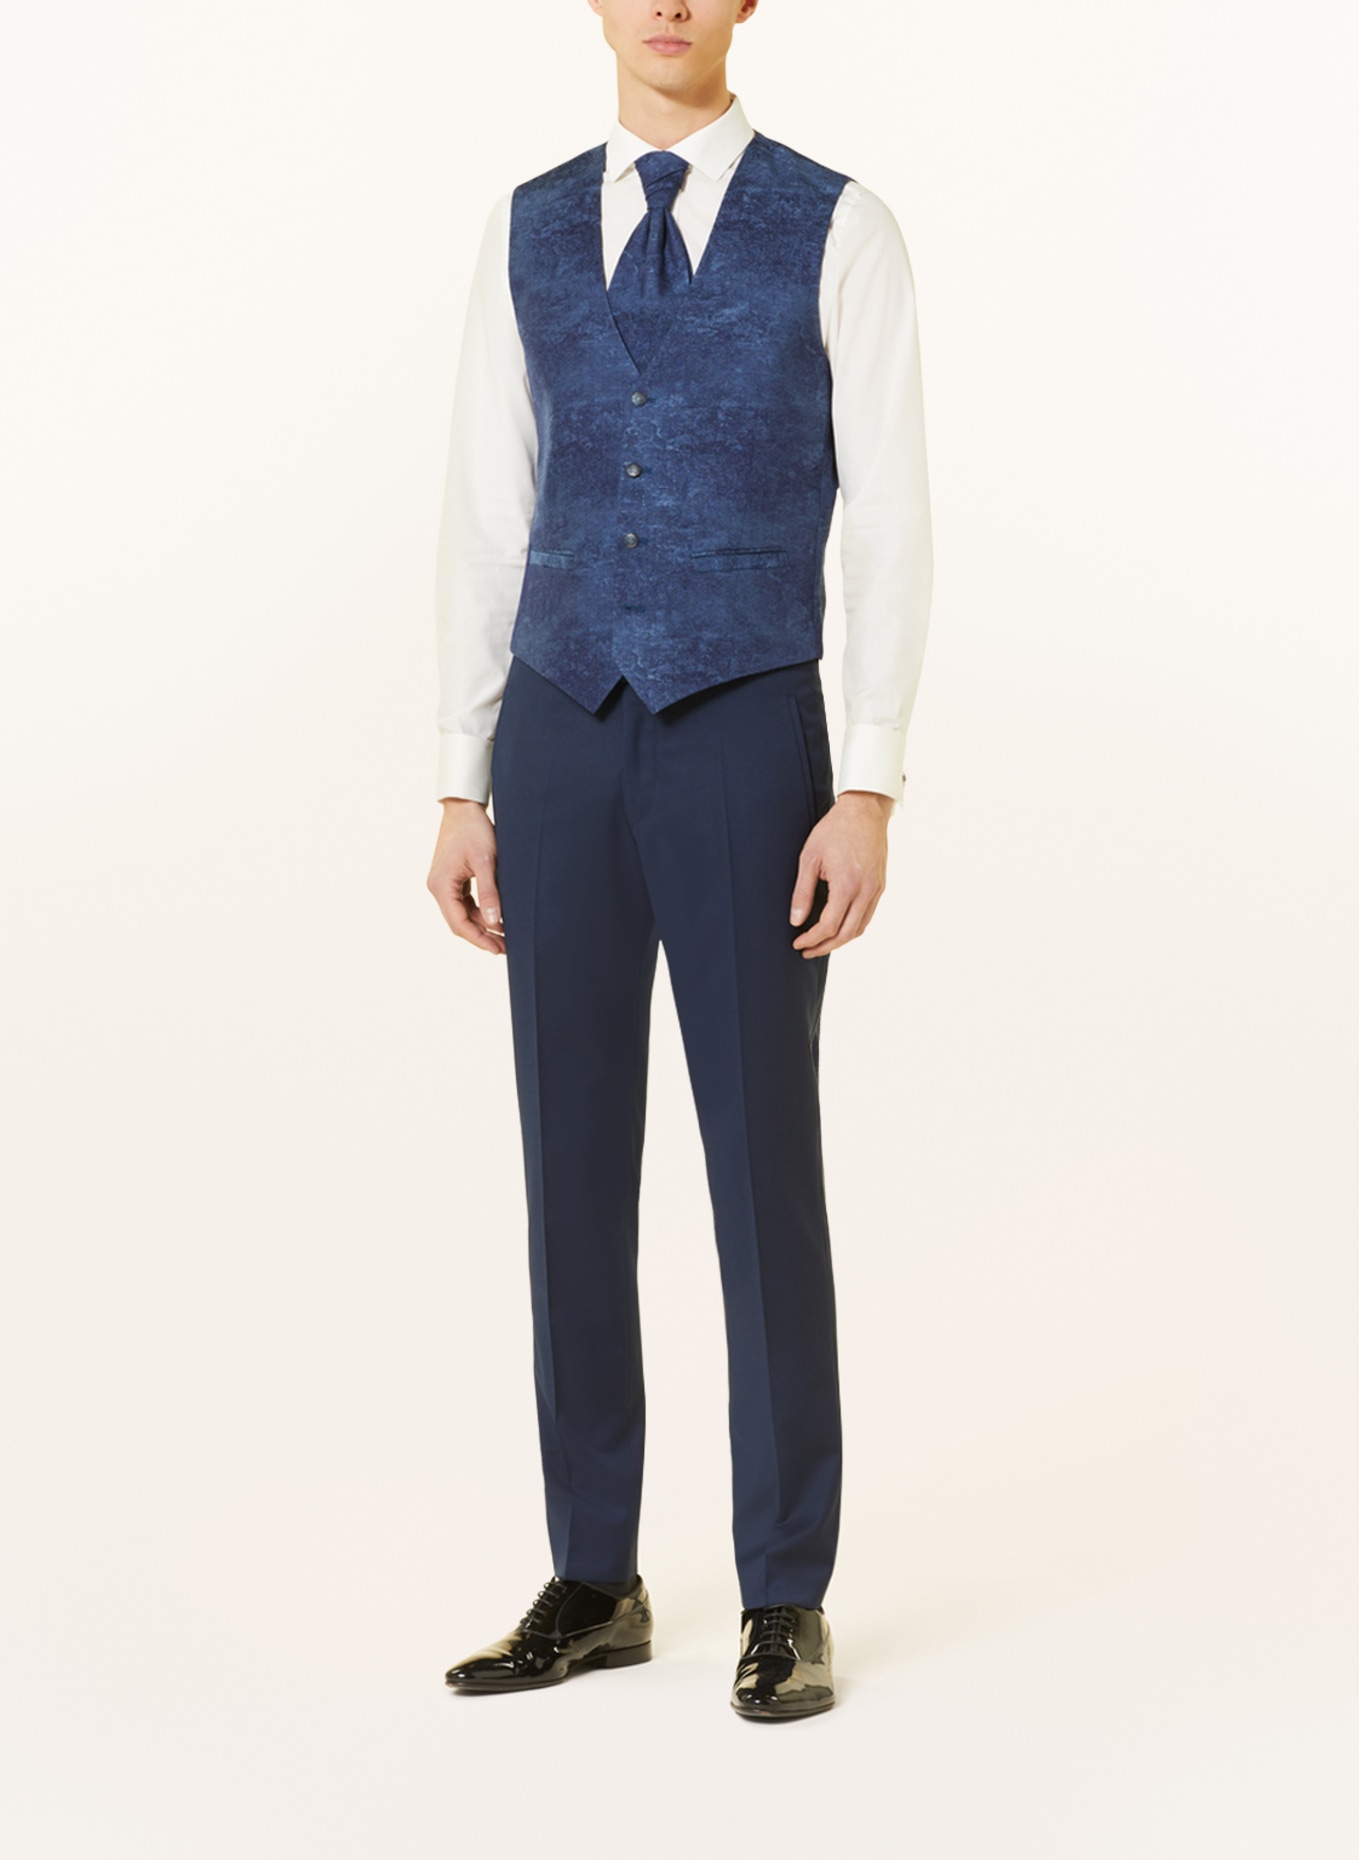 WILVORST Suit vest extra slim fit, Color: DARK BLUE (Image 2)